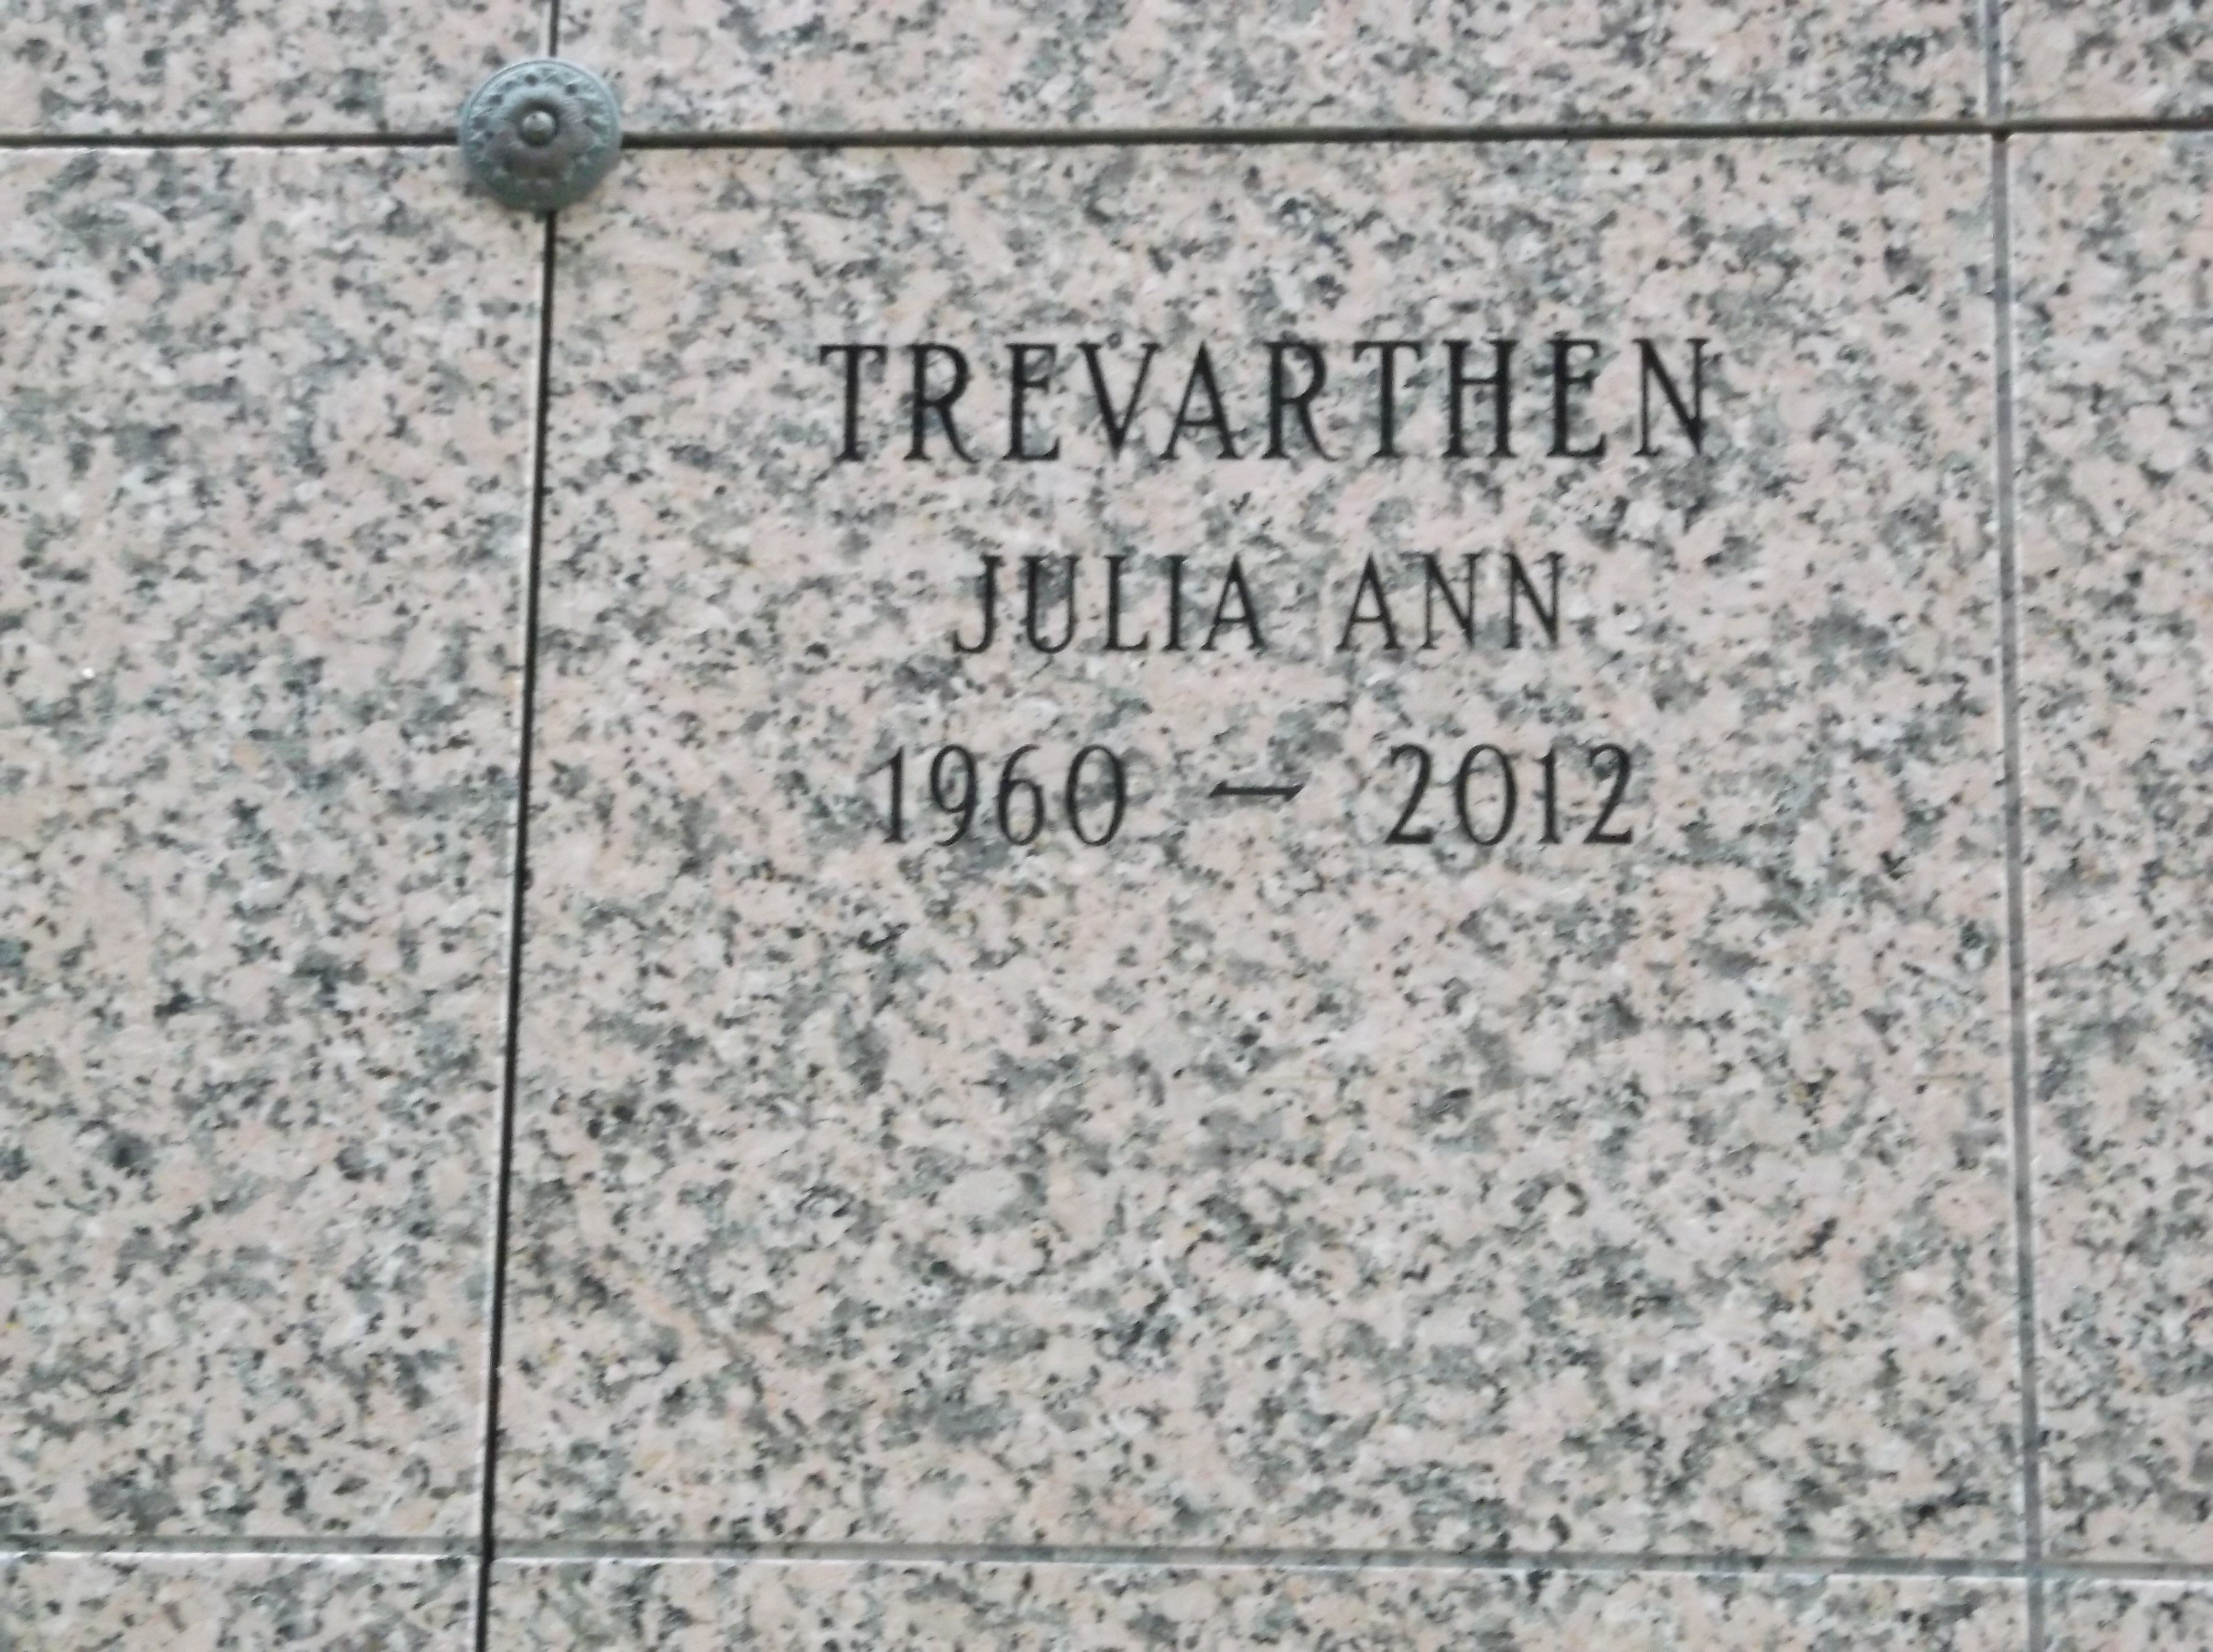 Julia Ann Trevarthen